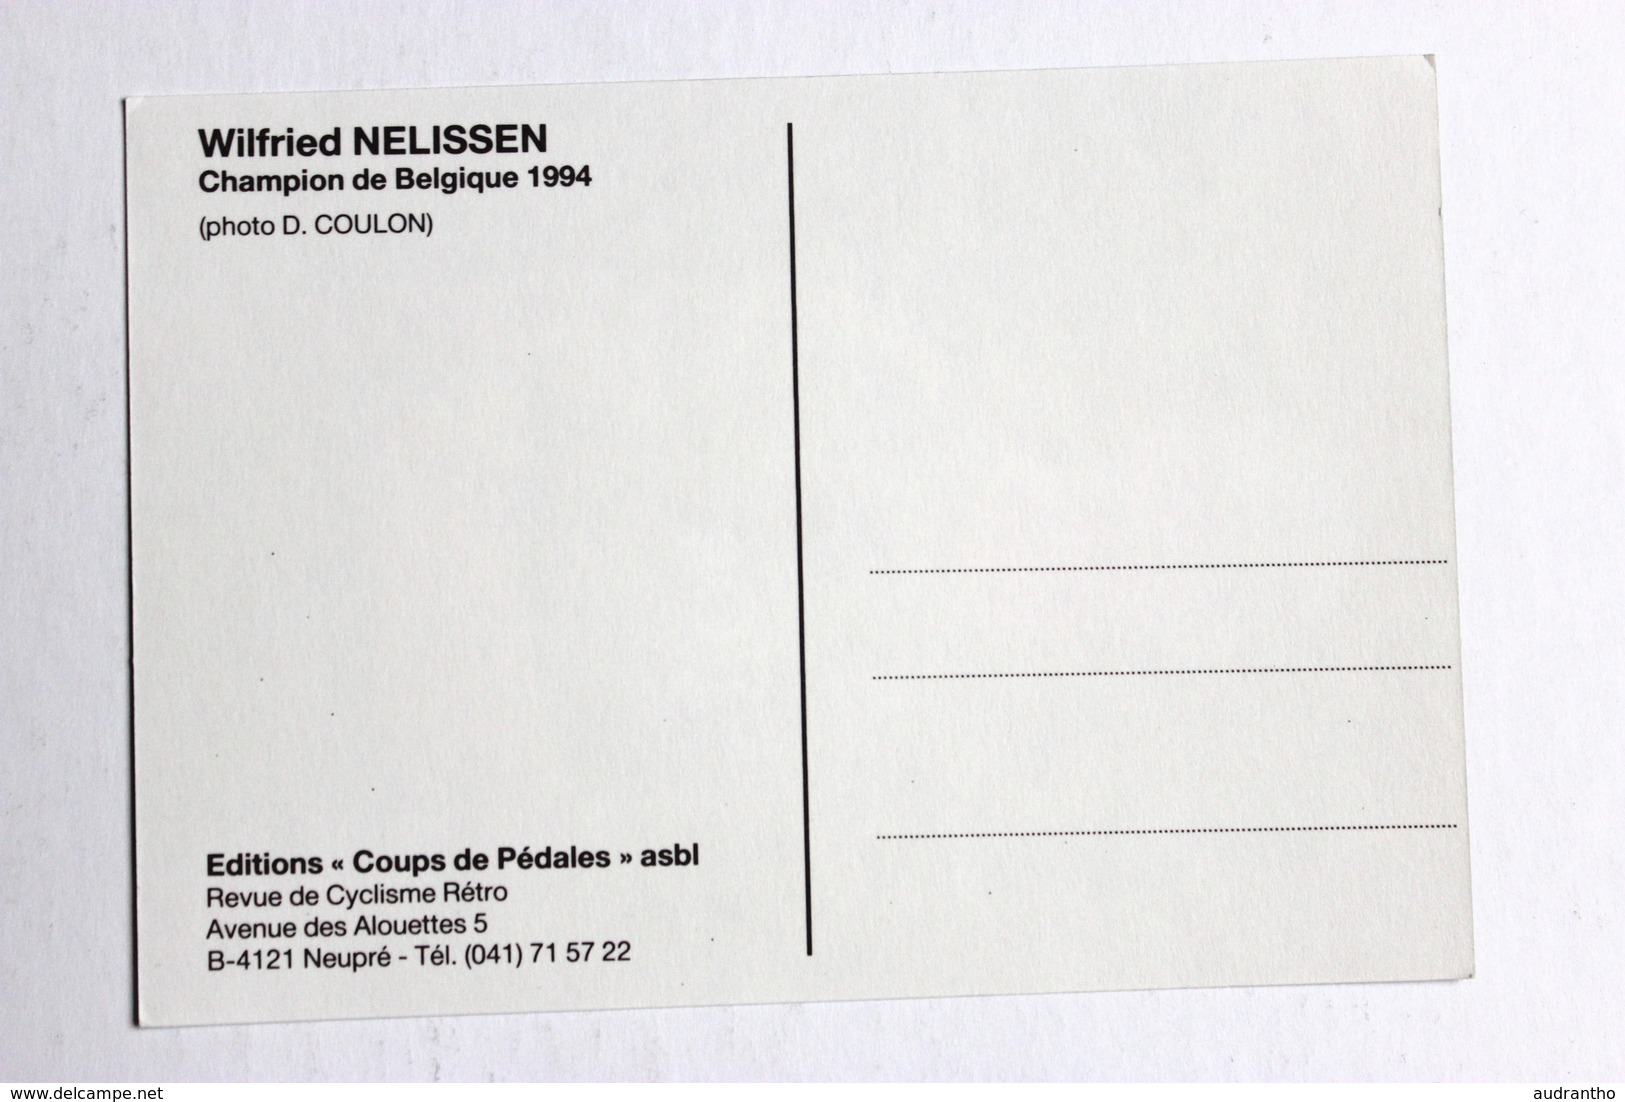 5 cartes postales Cyclisme cycliste Silovs Honchar Nelissen Joachim Gotti Coups de Pédales